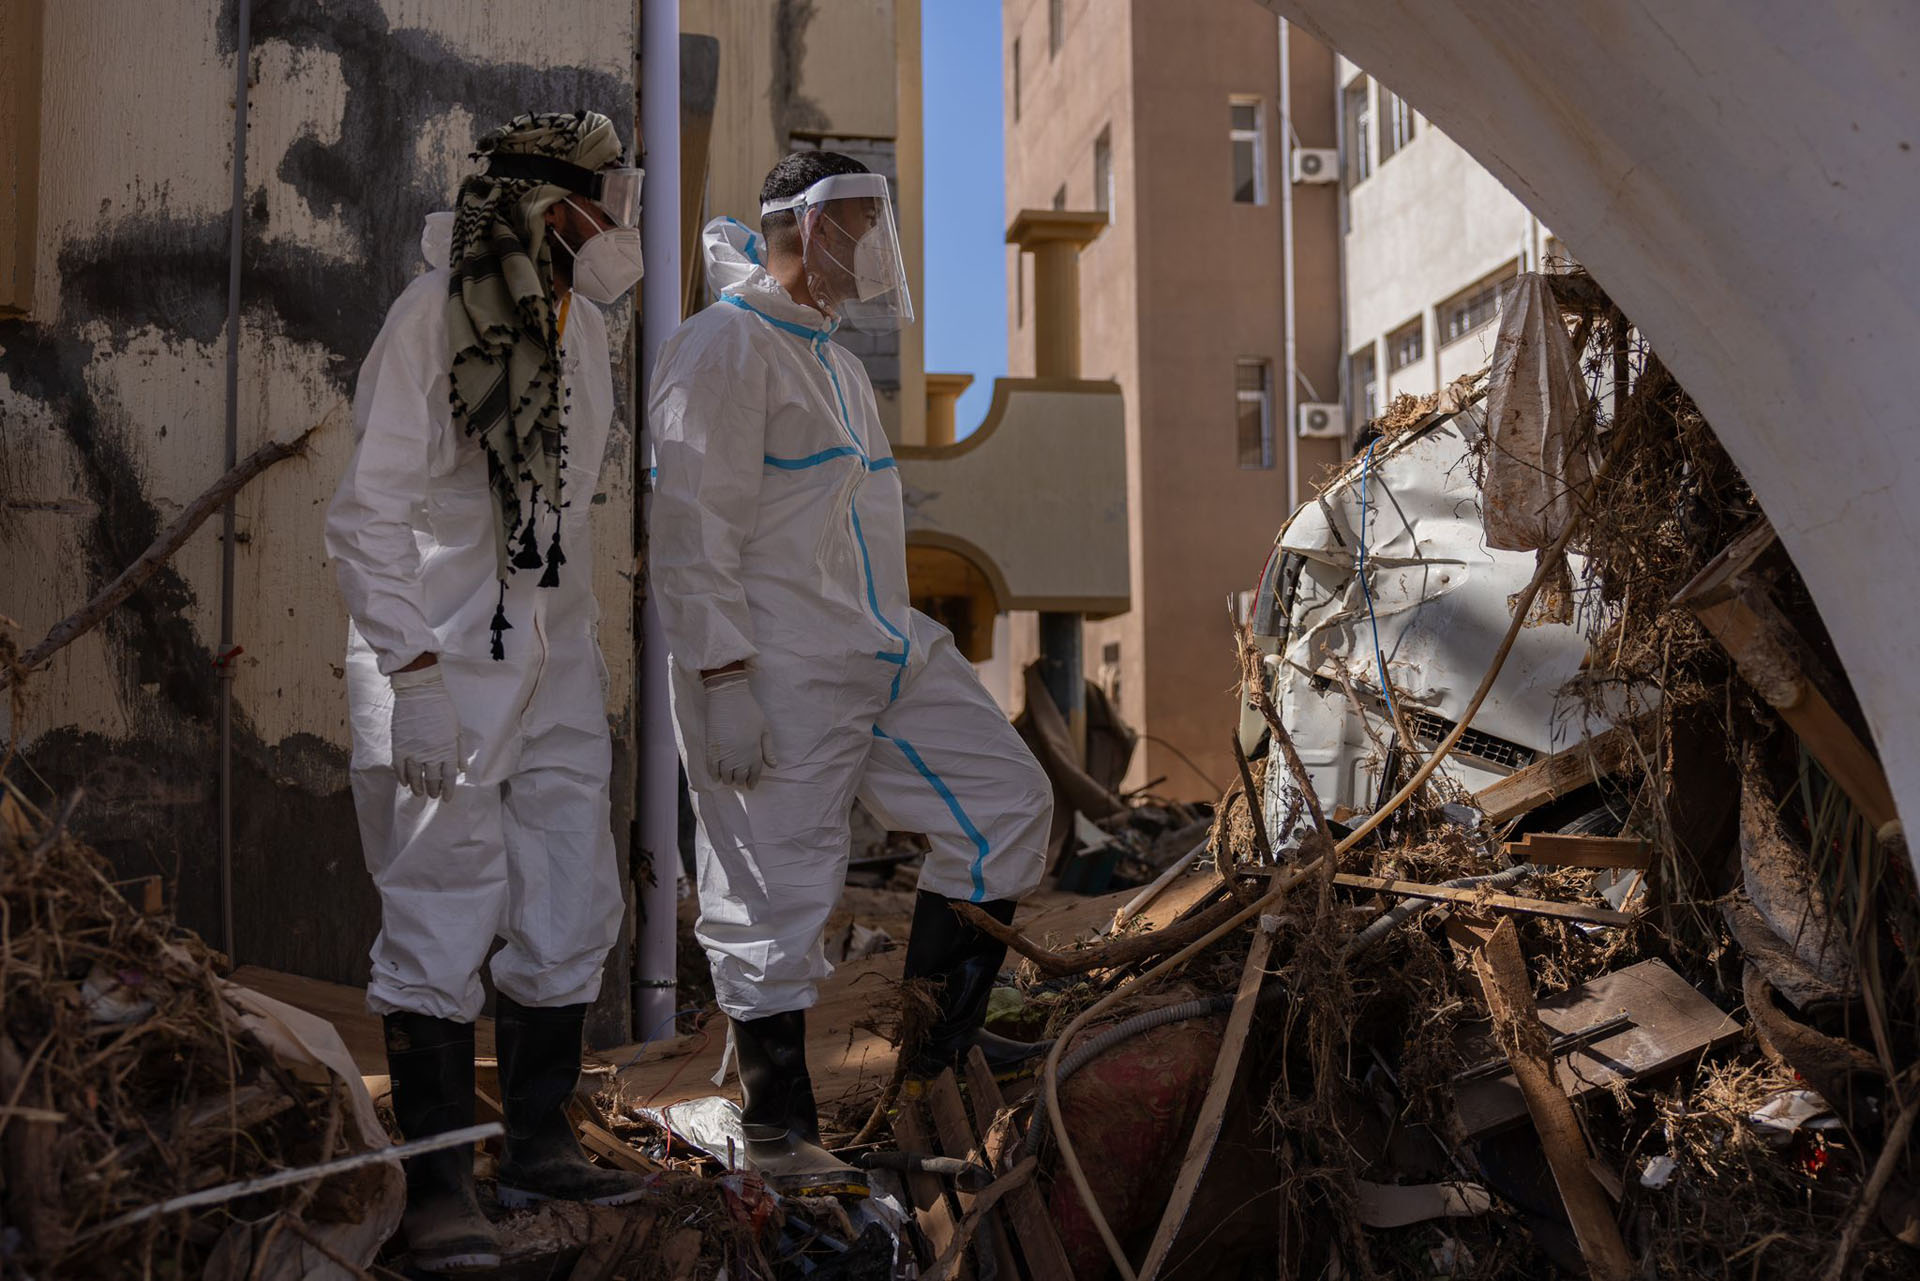 Hilfskräfte in Schutzanzügen und mit Masken inspizieren die Folgen der Überschwemmungen in Derna, Libyen. Krankheiten könnten sich verstärkt ausbreiten.